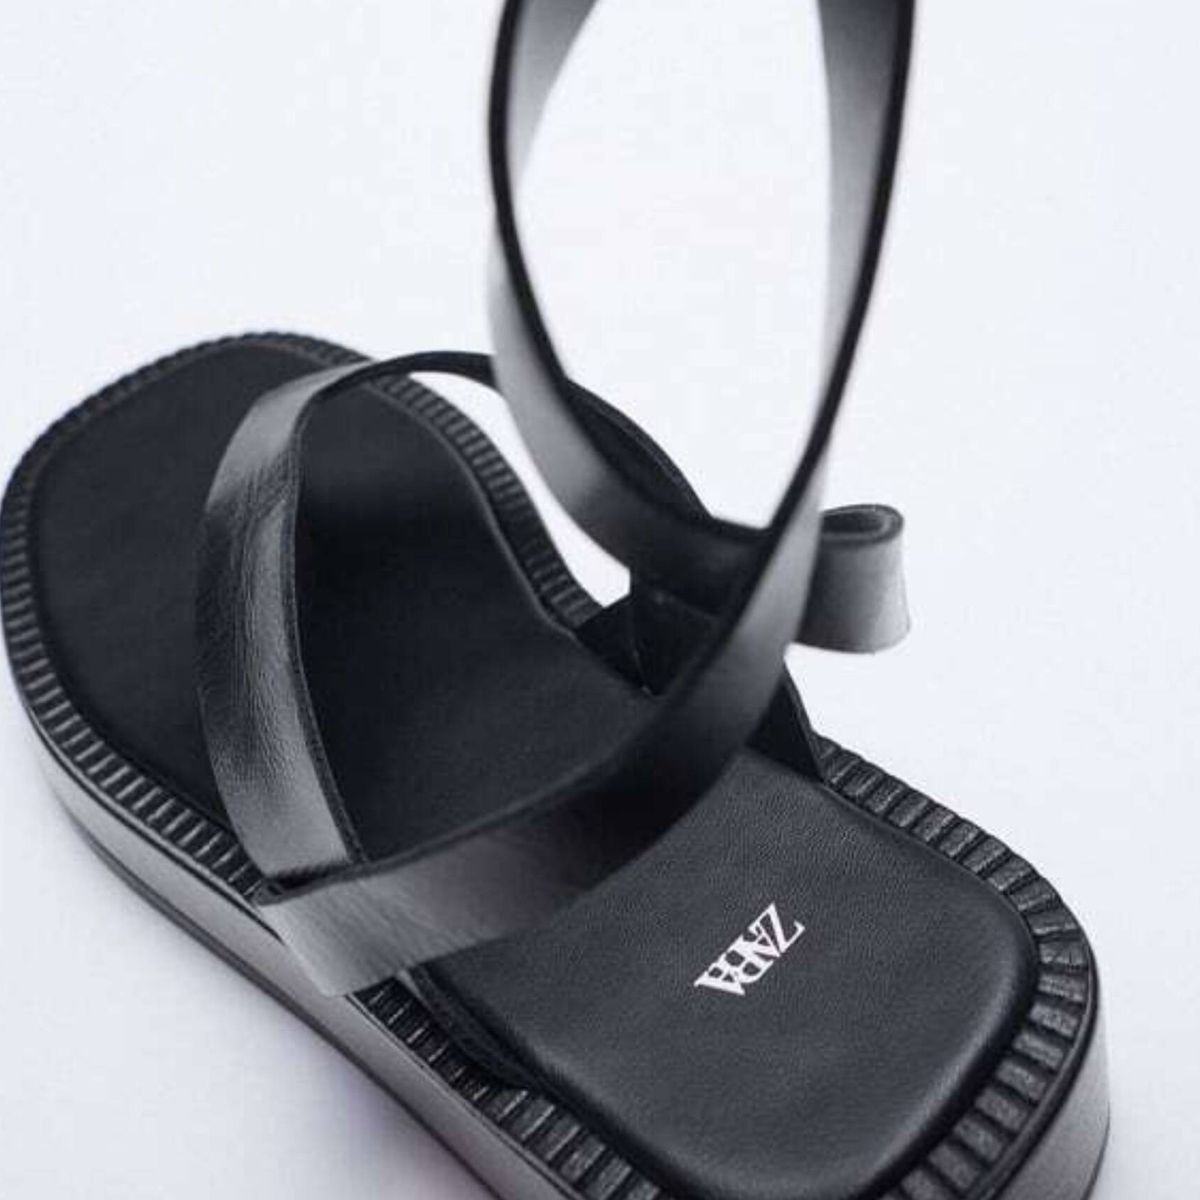 Agotadas y lista de espera: hablemos de las sandalias de Zara más vendidas